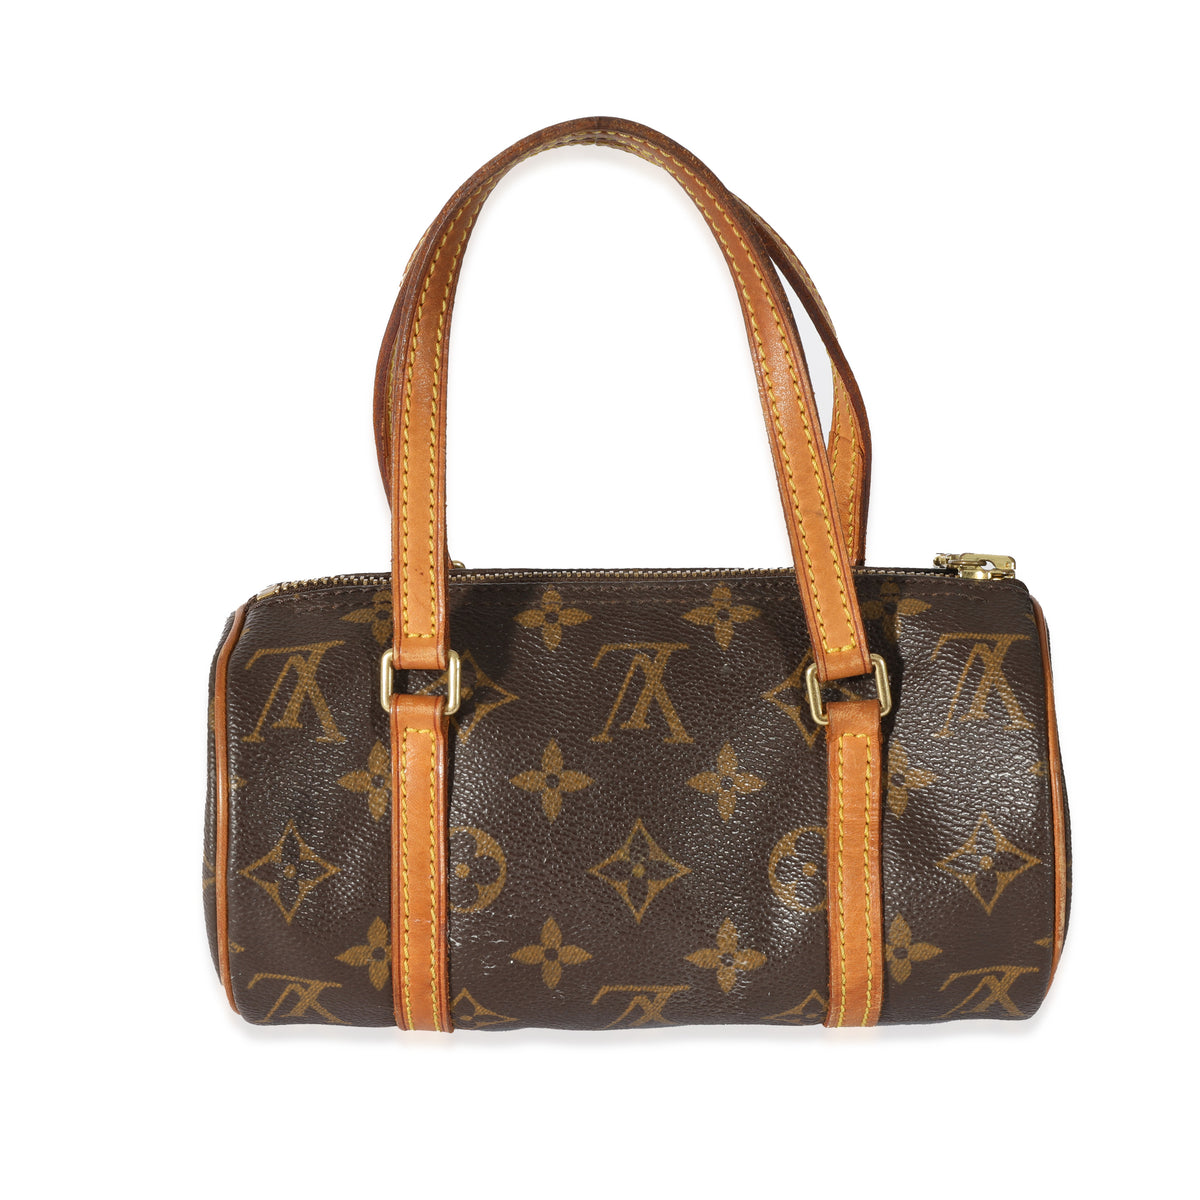 Louis Vuitton Monogram Papillon 19 Handbag